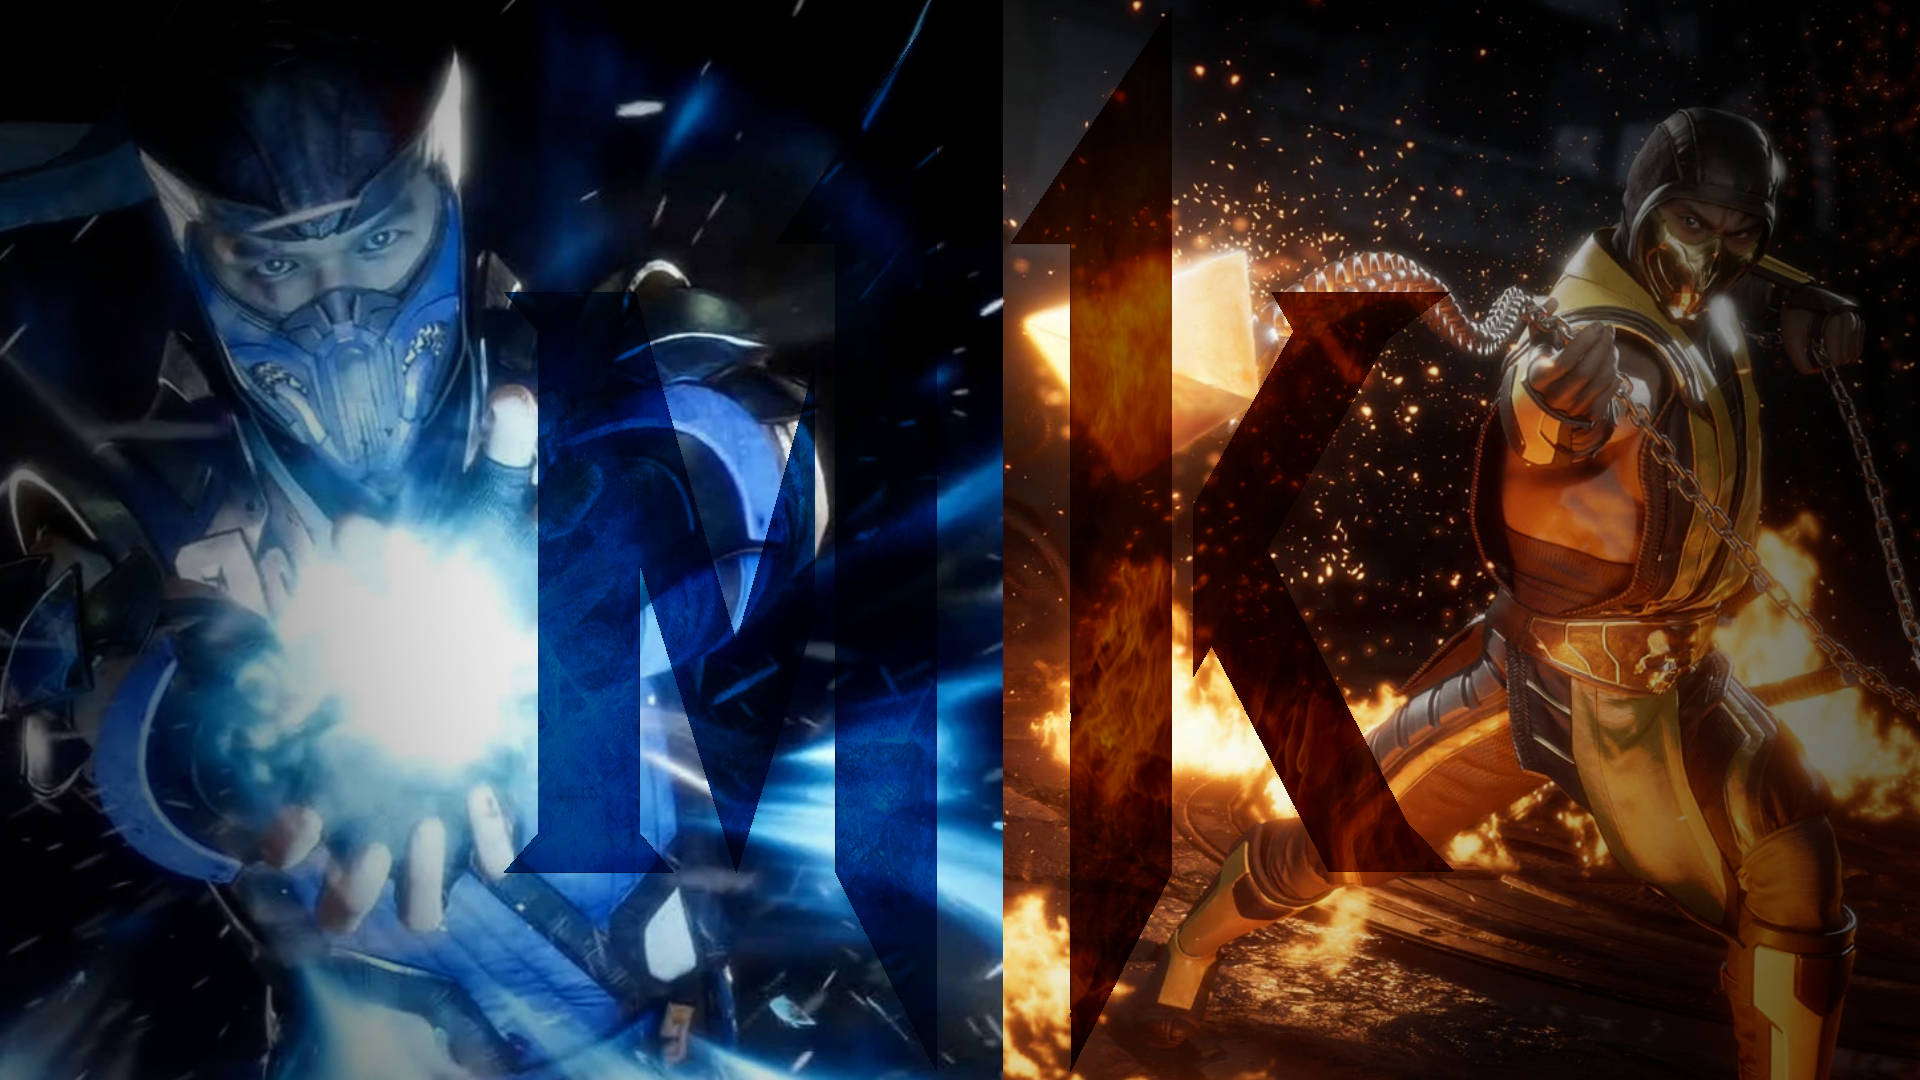 Mortal Kombat Scorpion Vs Sub Zero Collage Attacks Background